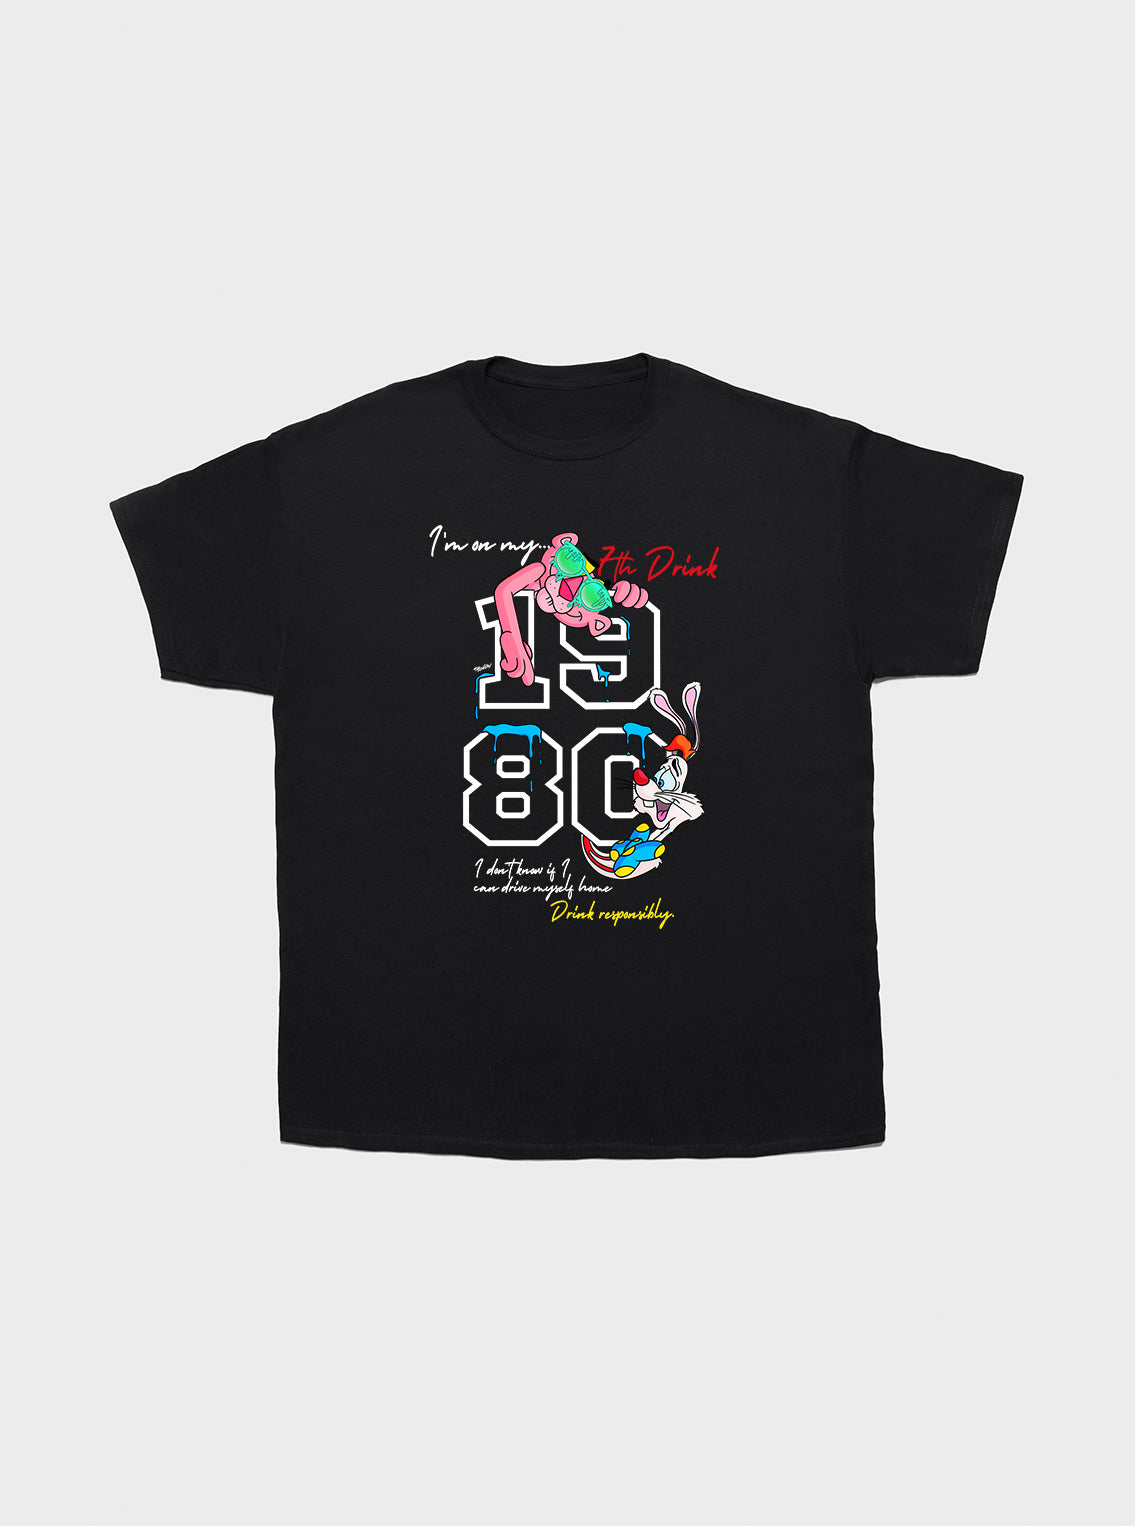 T-shirt 80's Baby!